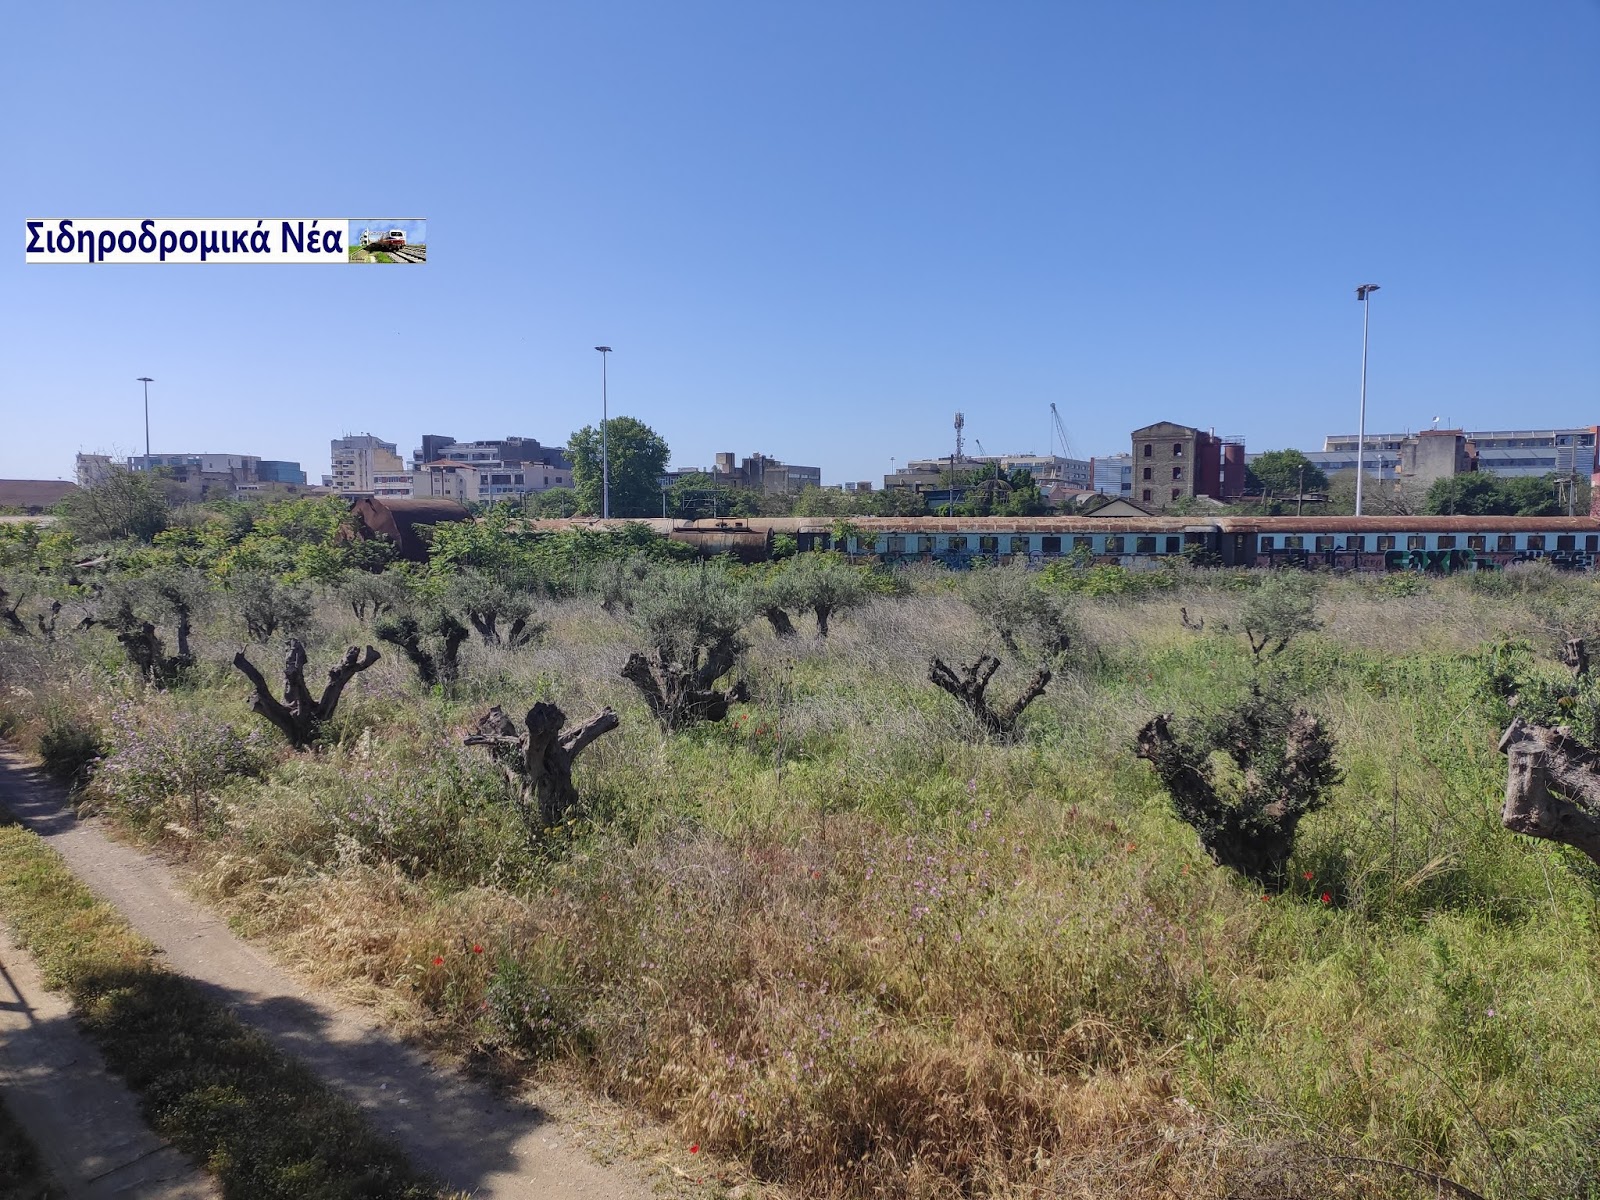 Τι προτίθεται να πράξει η ΓΑΙΑΟΣΕ προκειμένου να μη ξεραθούν τα ελαιόδεντρα στον παλιό σταθμο Θεσσαλονίκης; - Φωτογραφία 1